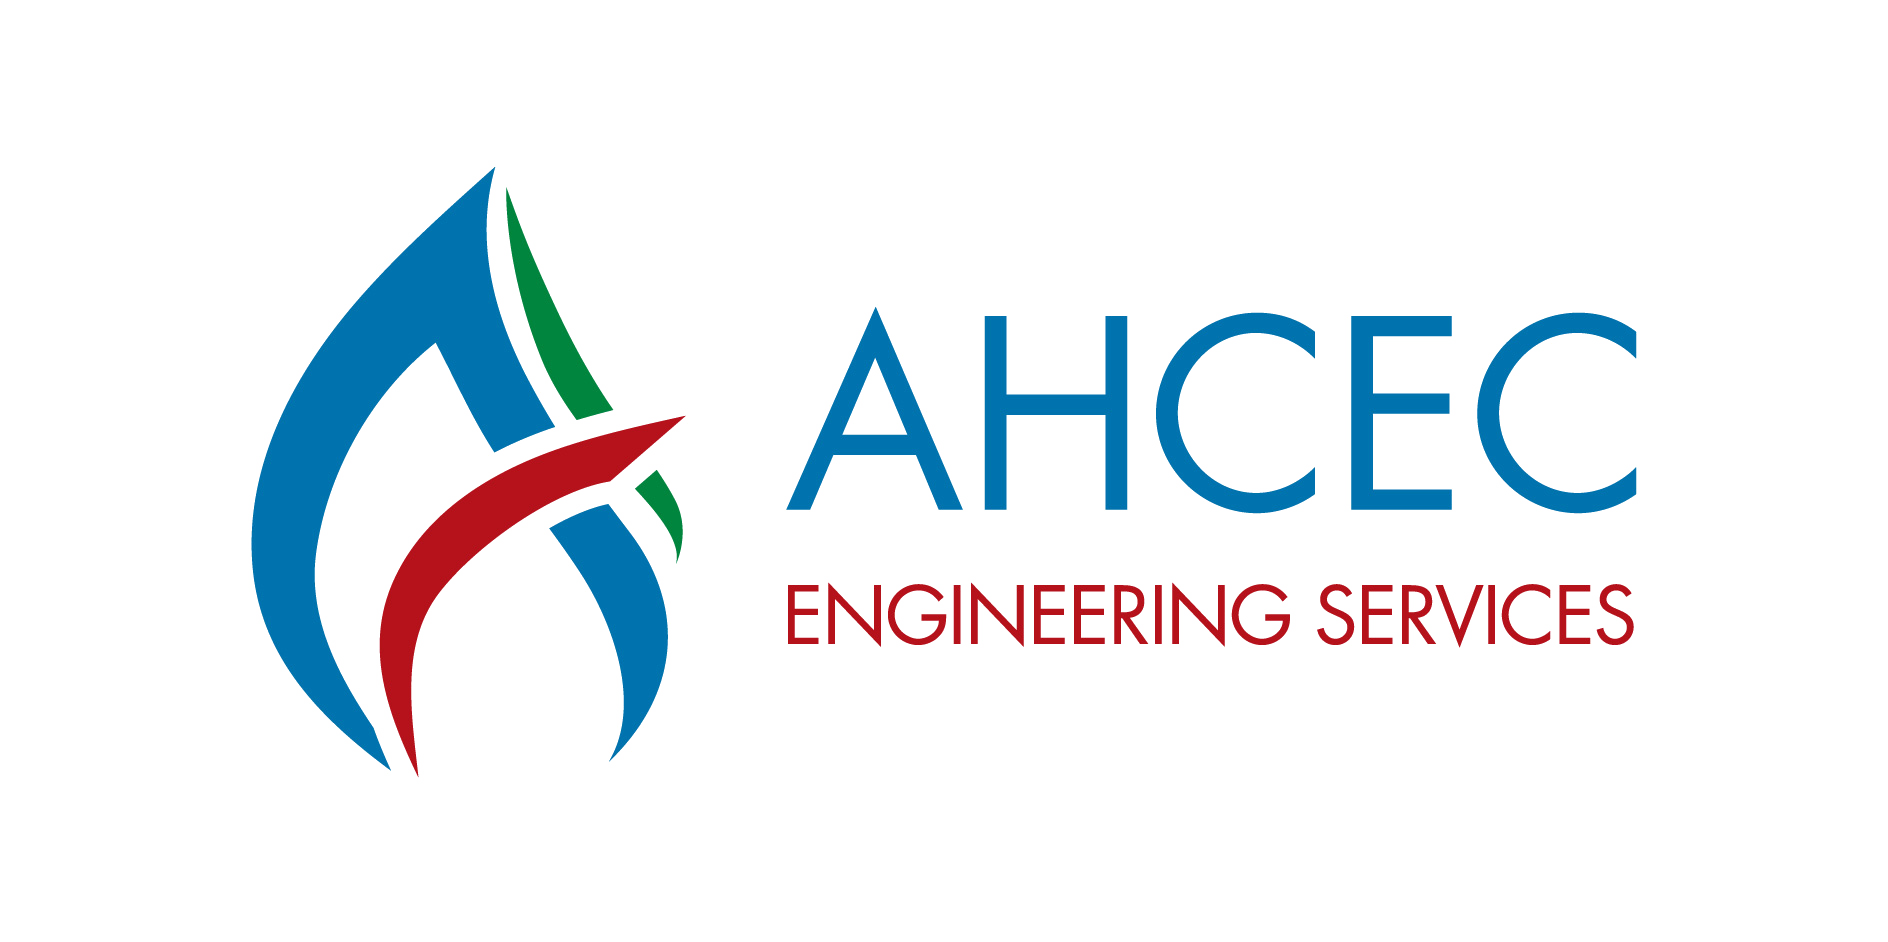 Alaa Abdulhadi & Khalifa Hawas Engineering Consulting Co. (AHCEC)